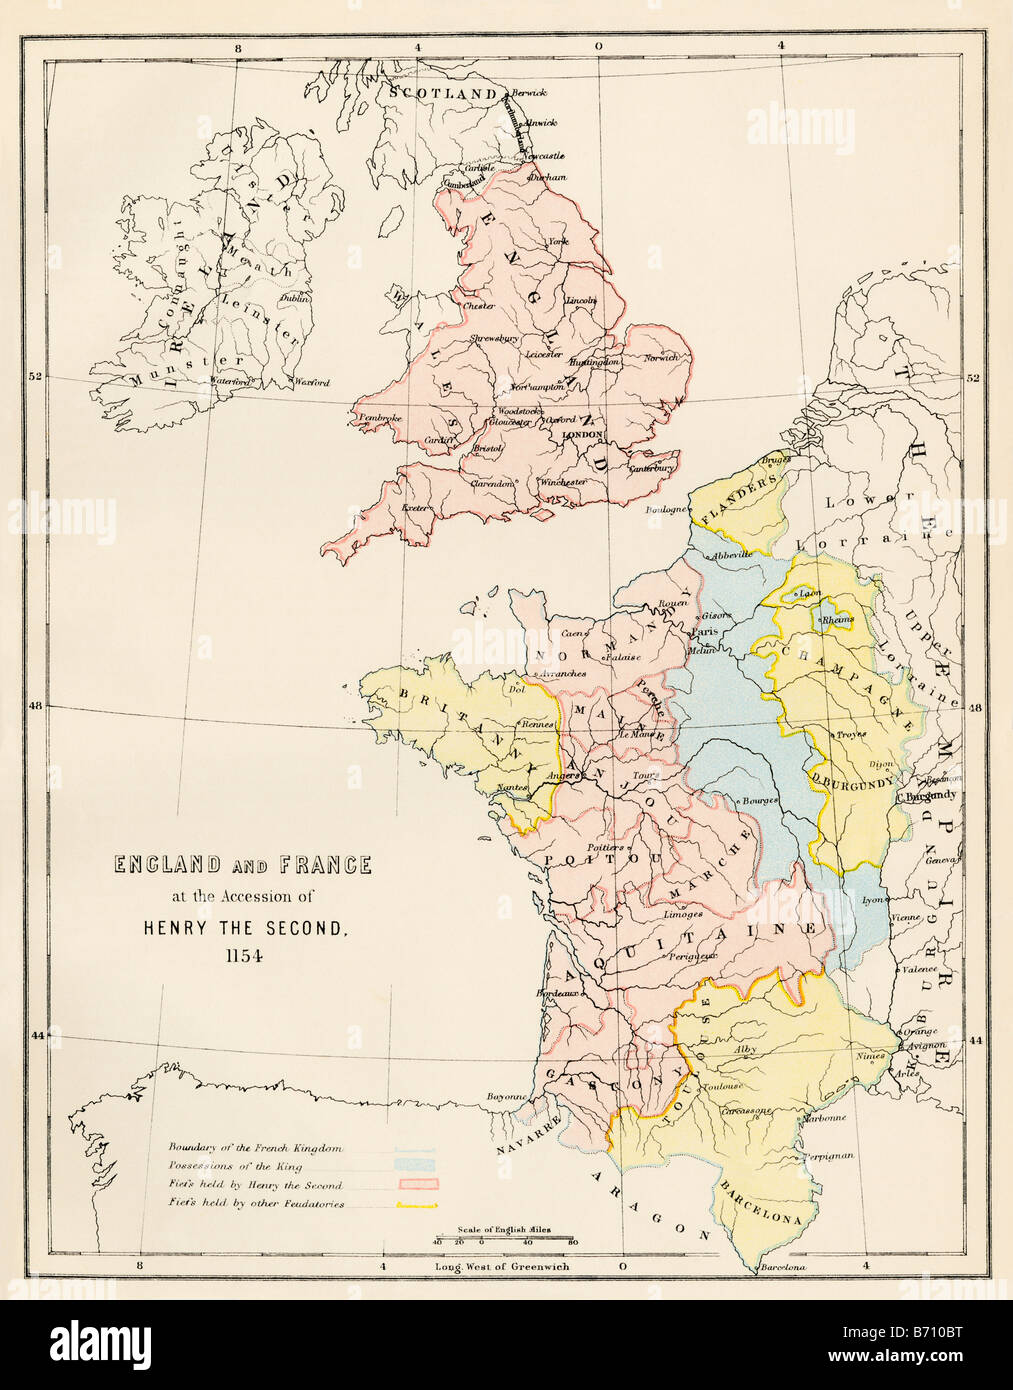 Inglaterra y Francia a la adhesión de Enrique II 1154. Litografía de color Foto de stock